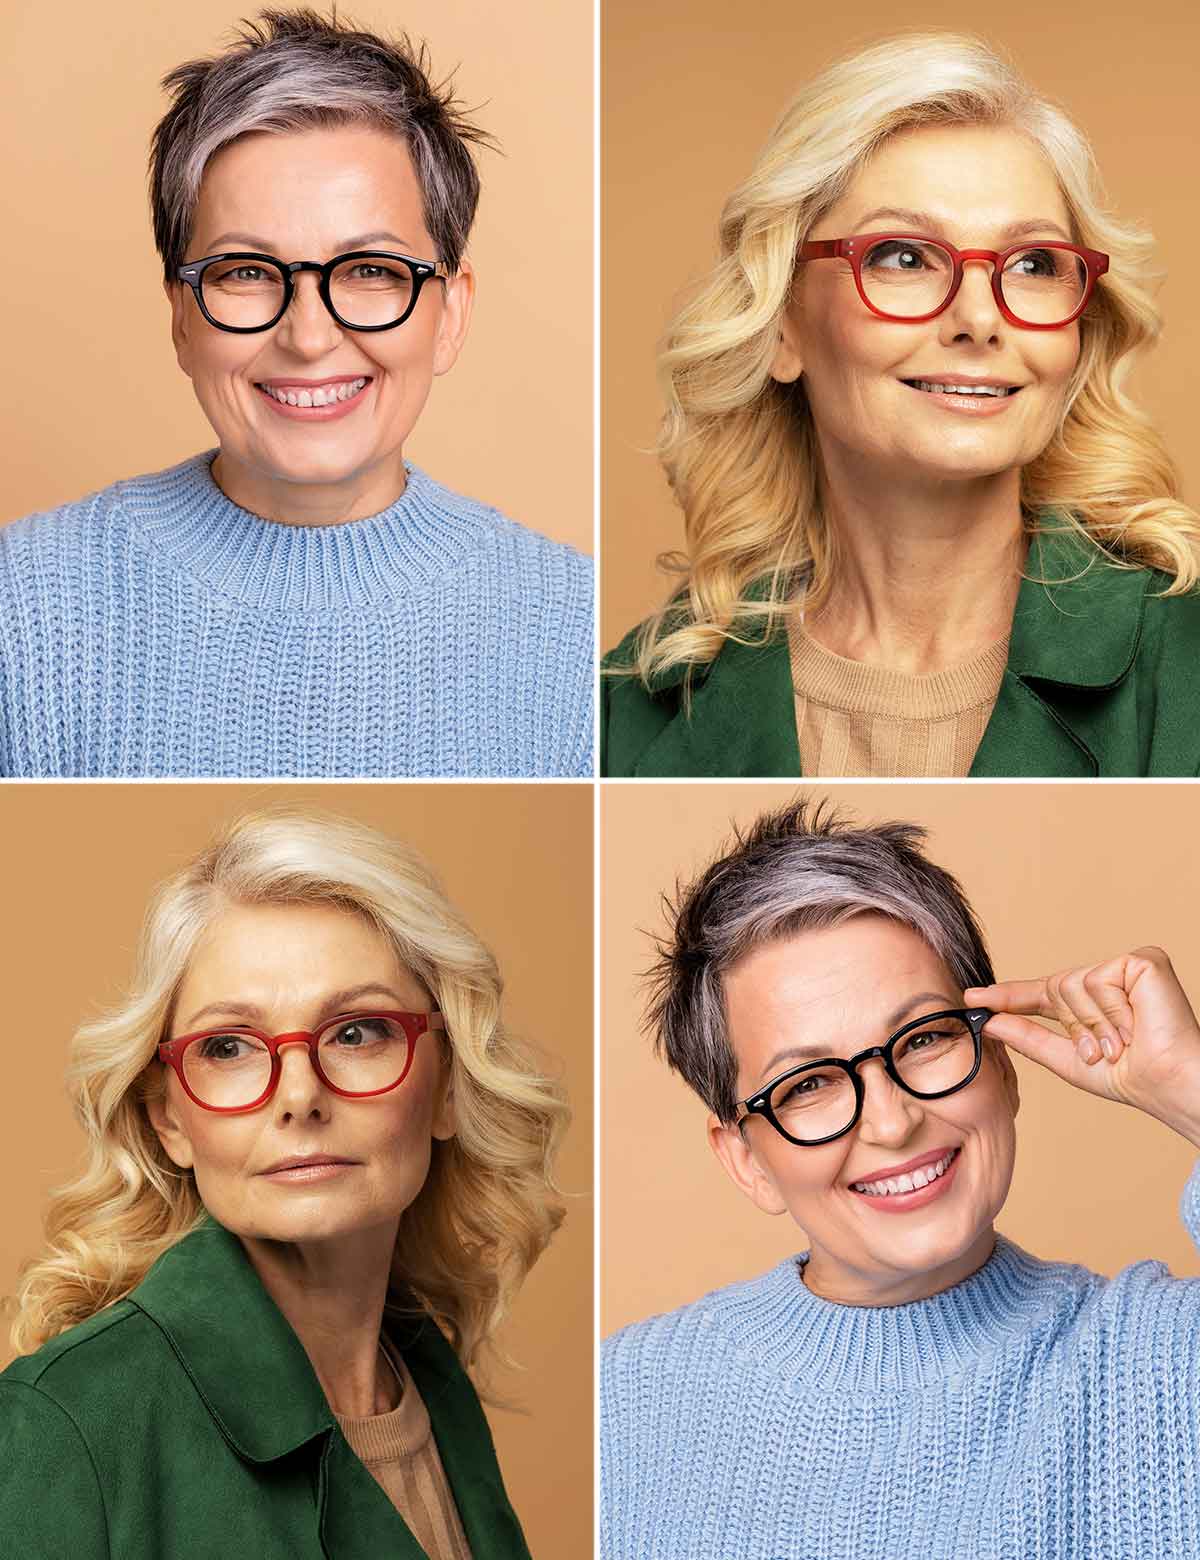 Tagli capelli donna over 60 con occhiali da vista